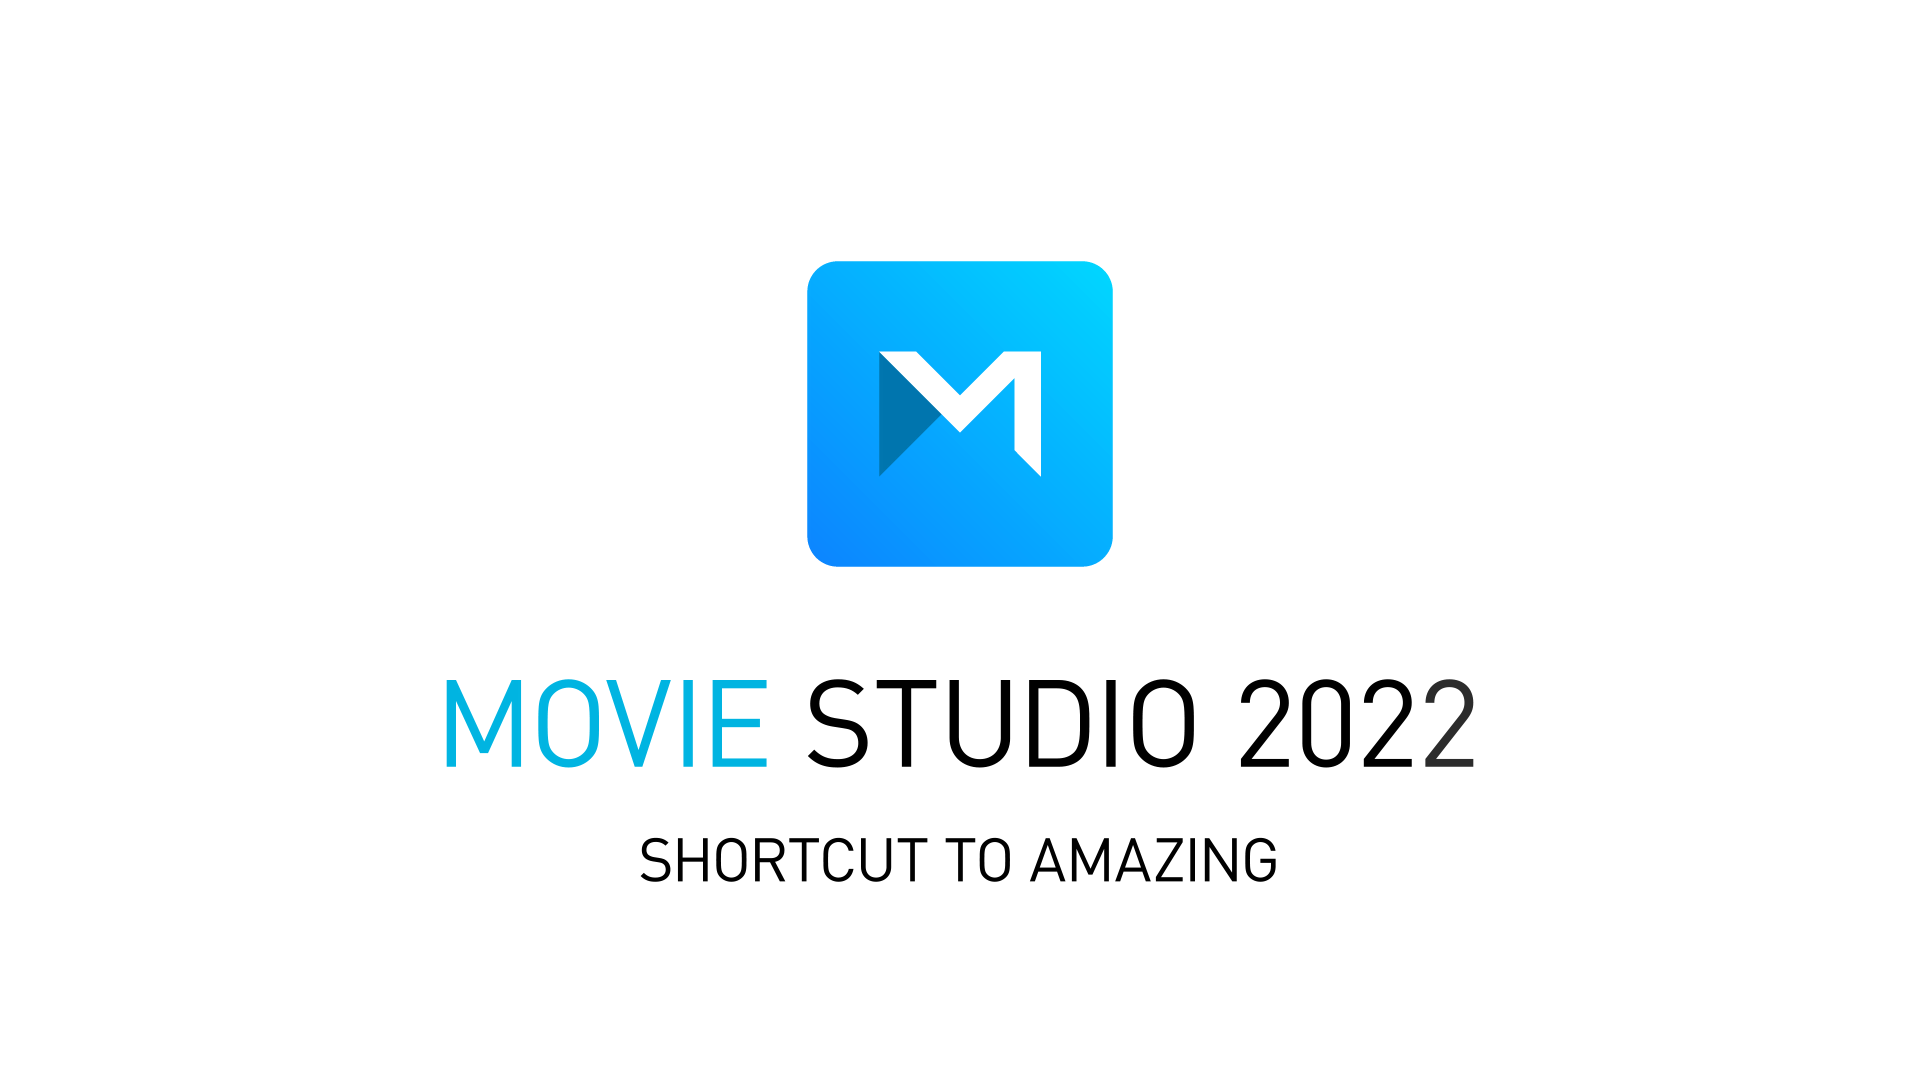 Nous avons des nouvelles importantes concernant Movie Studio